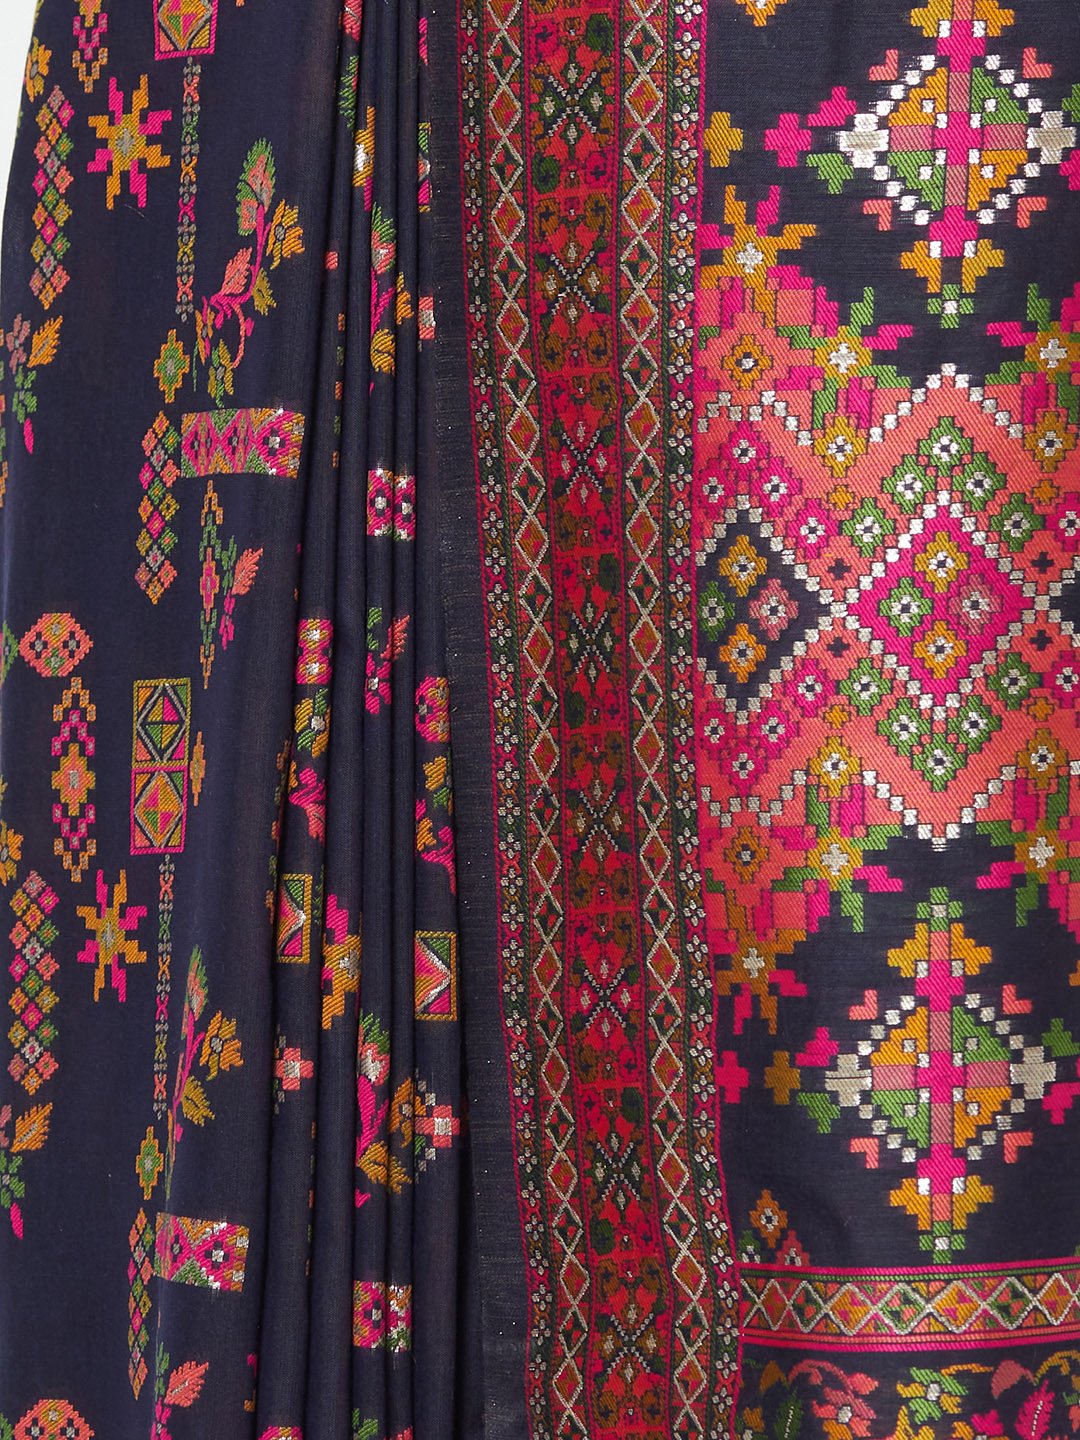 Black Handloom Saree With Thread Woven